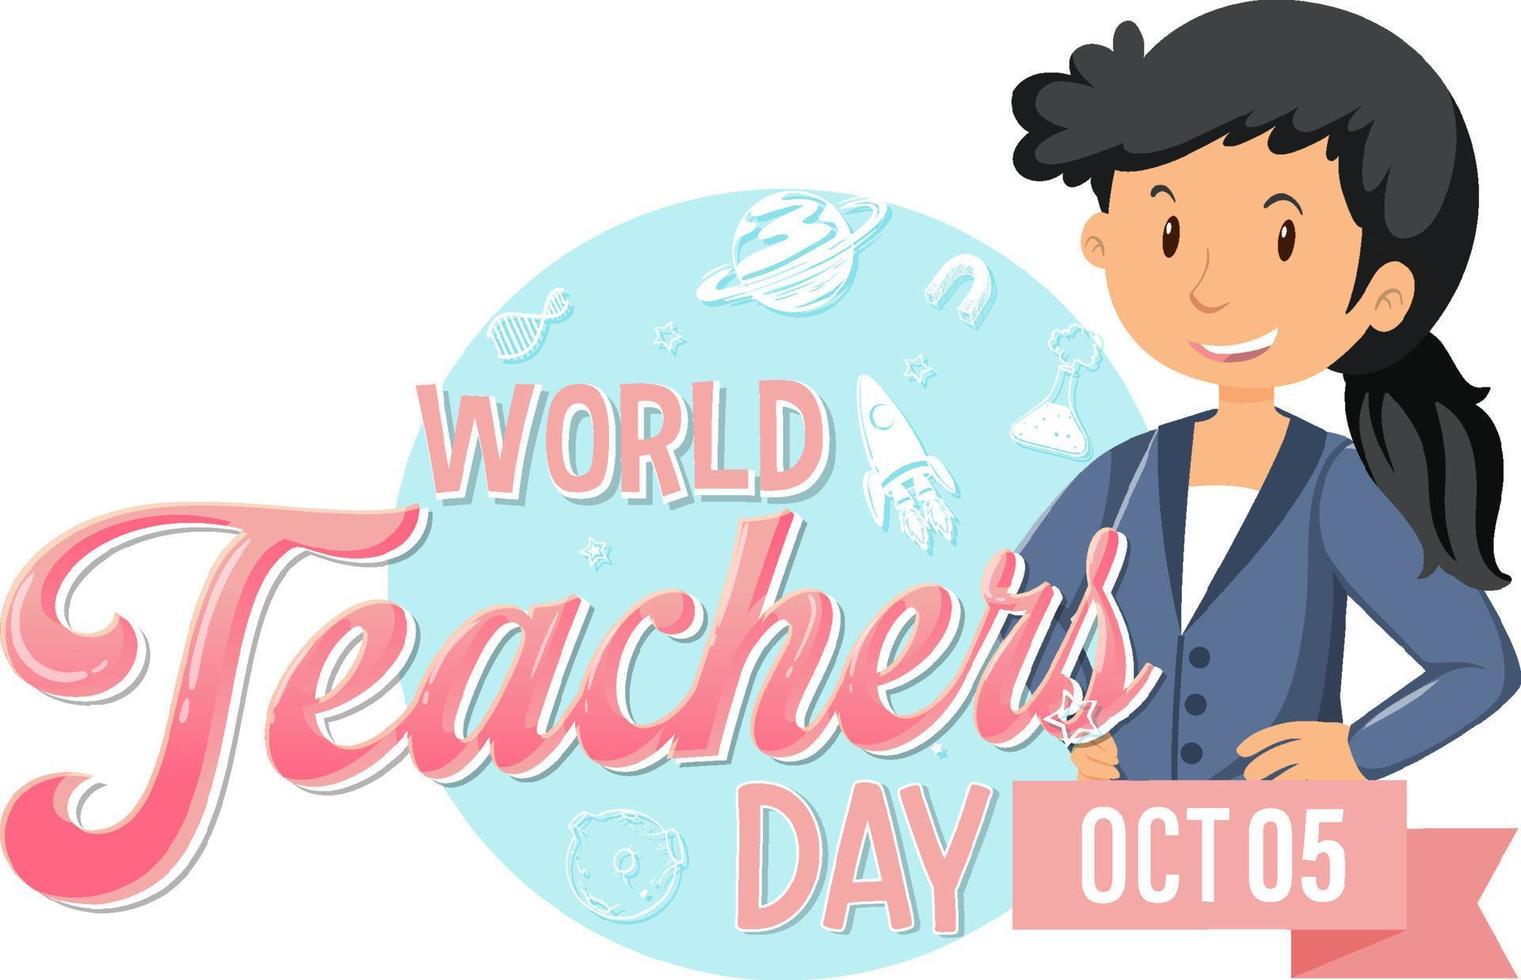 conception de bannière de logo de la journée mondiale des enseignants vecteur